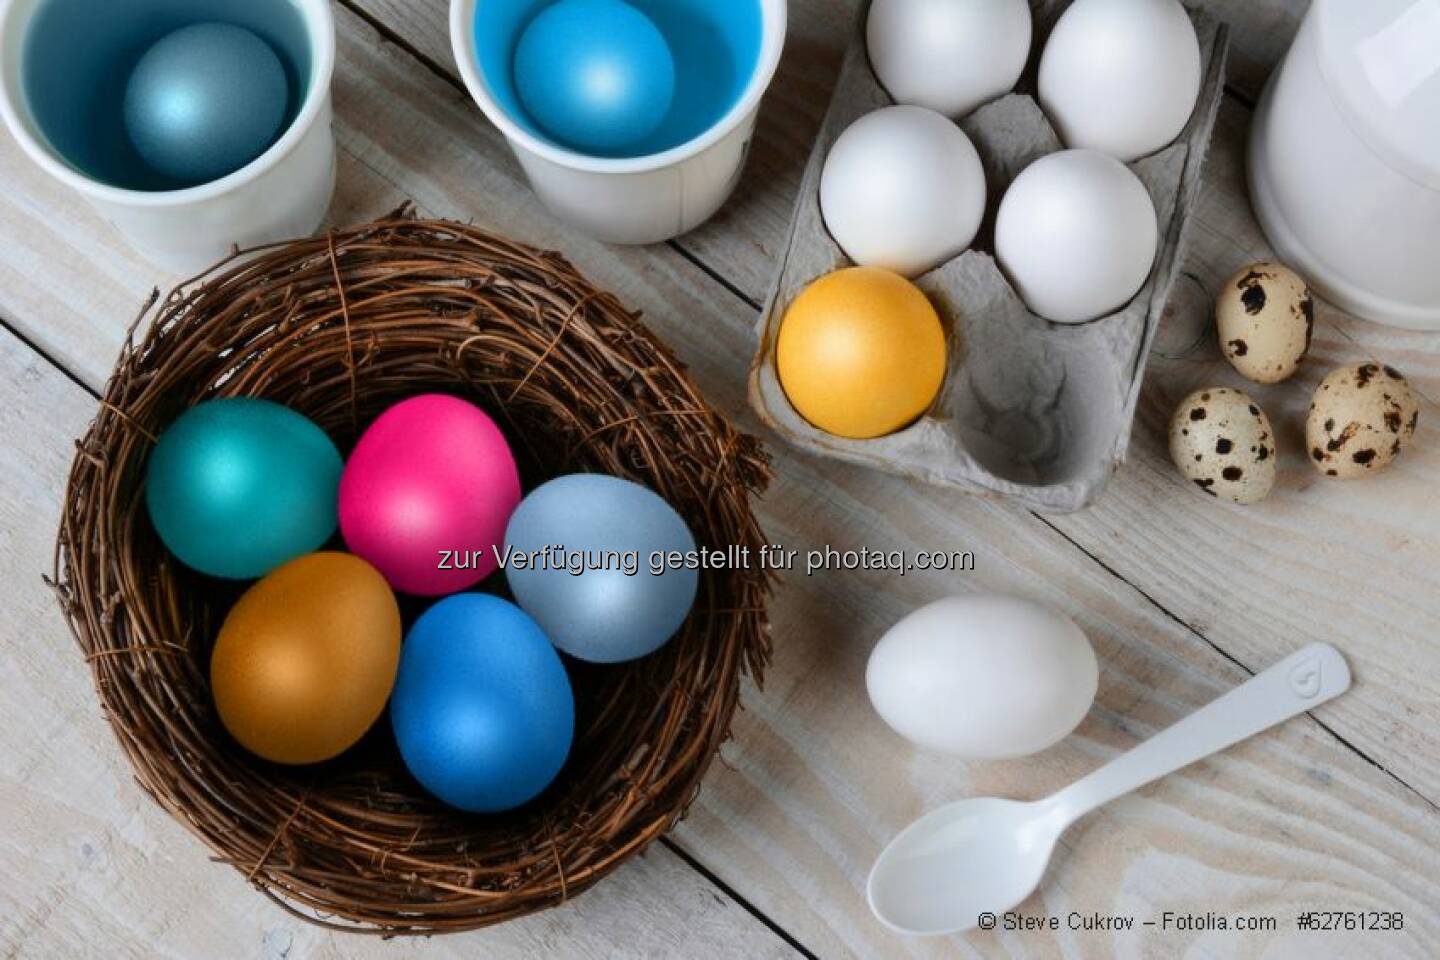 Bemalte Ostereier - das ist Kalk, wie wir ihn mögen! ;-) Wir wünschen euch und euren Familien ein frohes Osterfest!  Source: http://facebook.com/bwtwasser